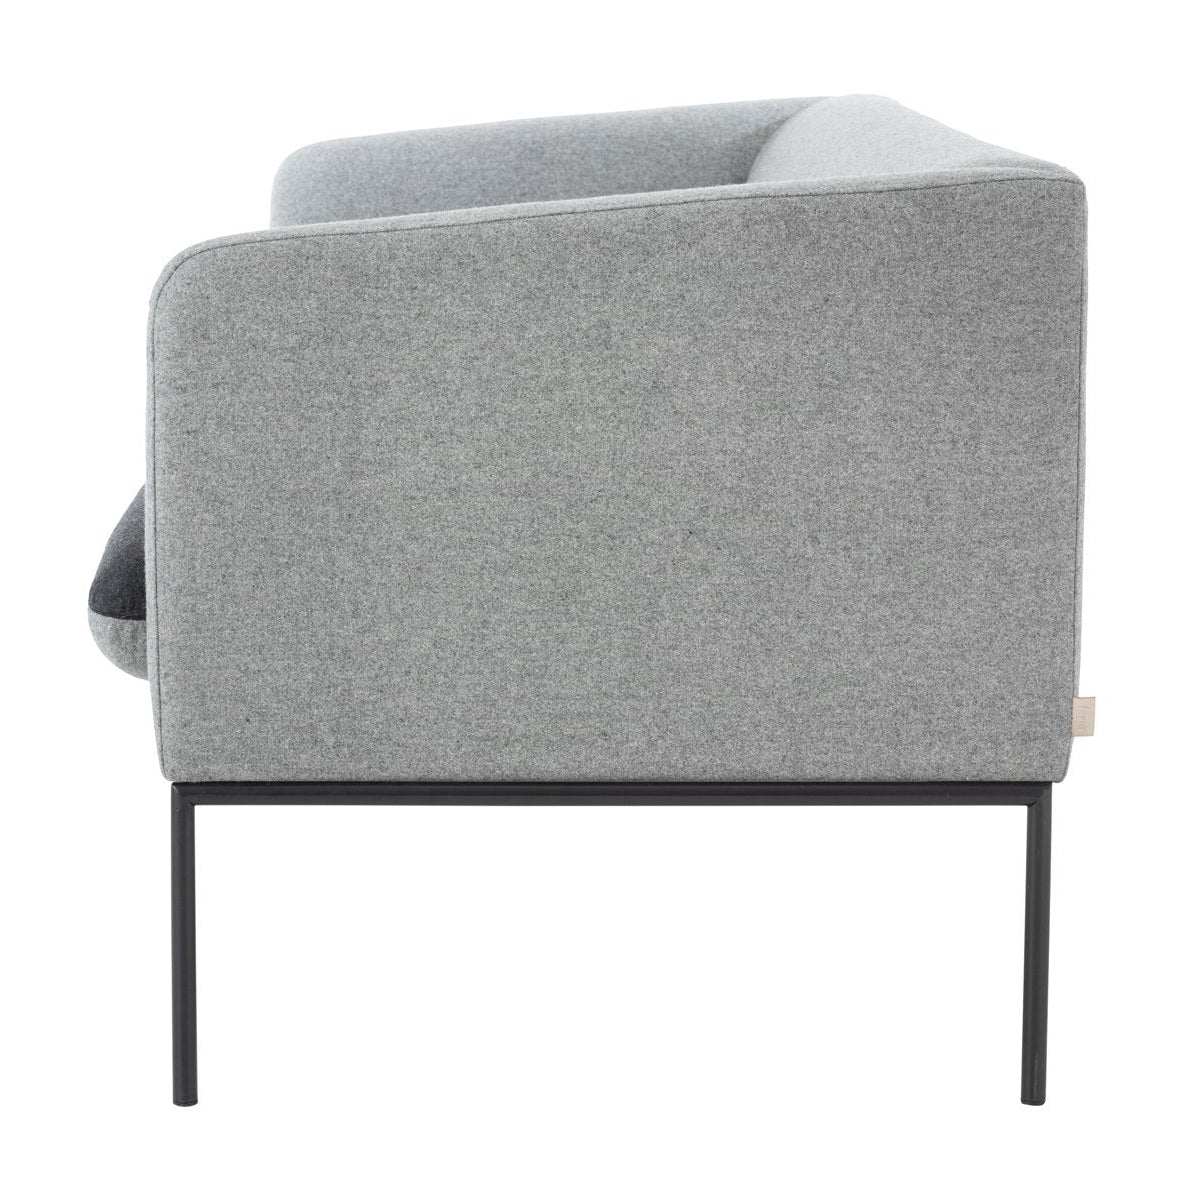 Ferm Living Turn Sofa 2 Wool, Seat Dark Grey